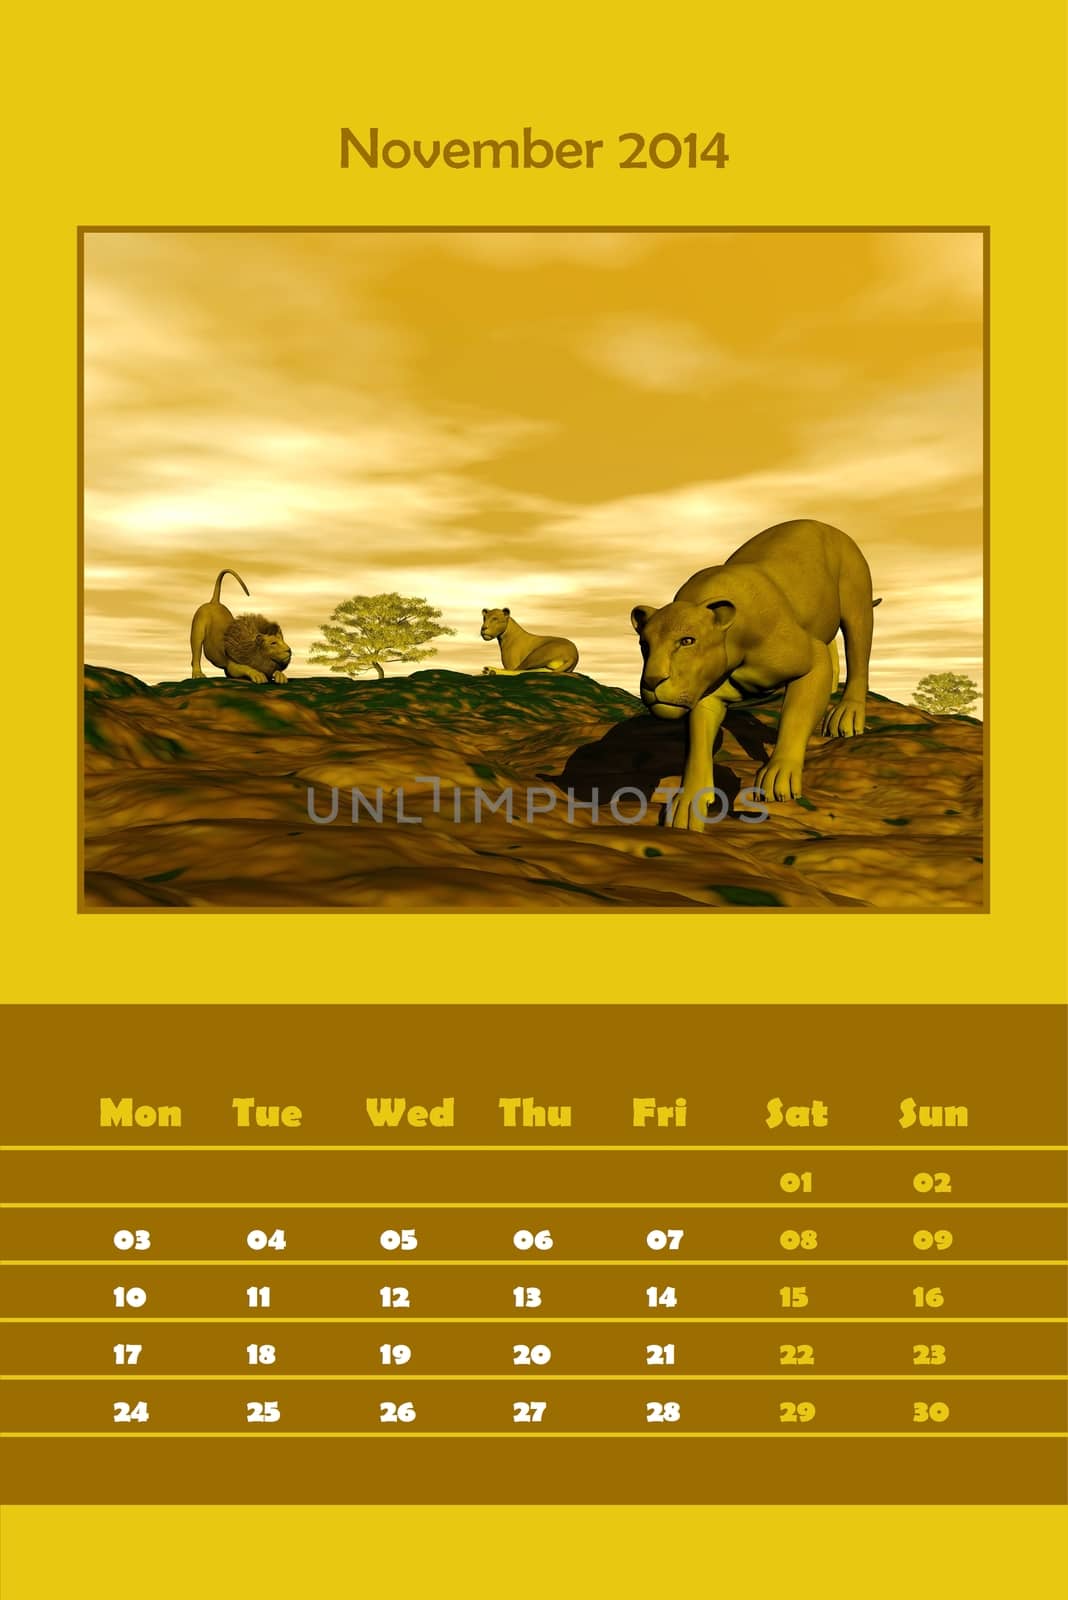 Safari calendar for 2014 - november by Elenaphotos21